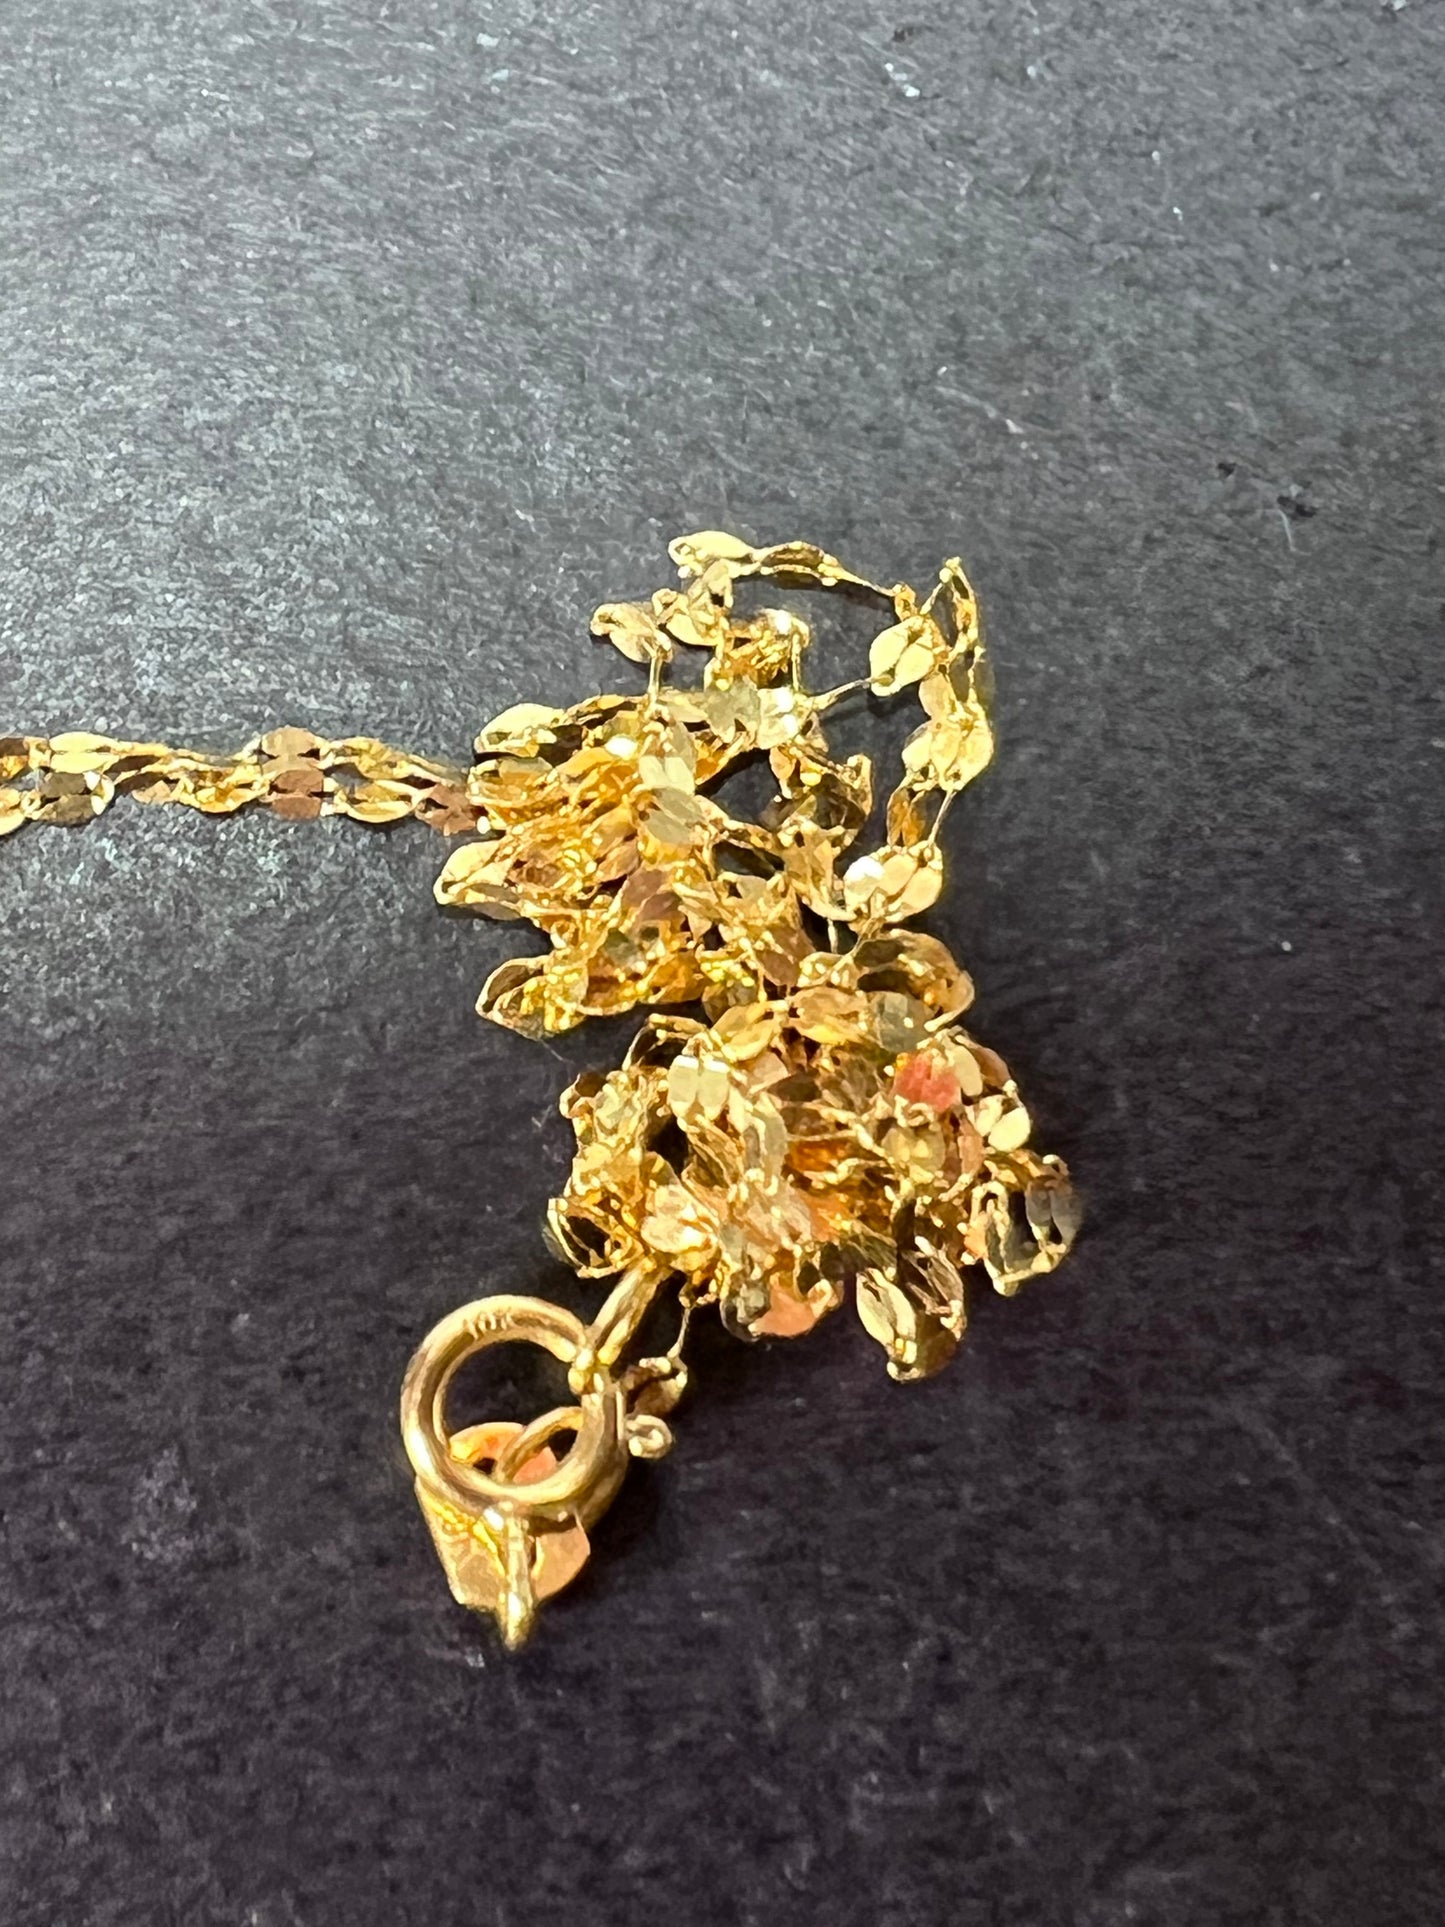 10k gold 18 inch mirror chain